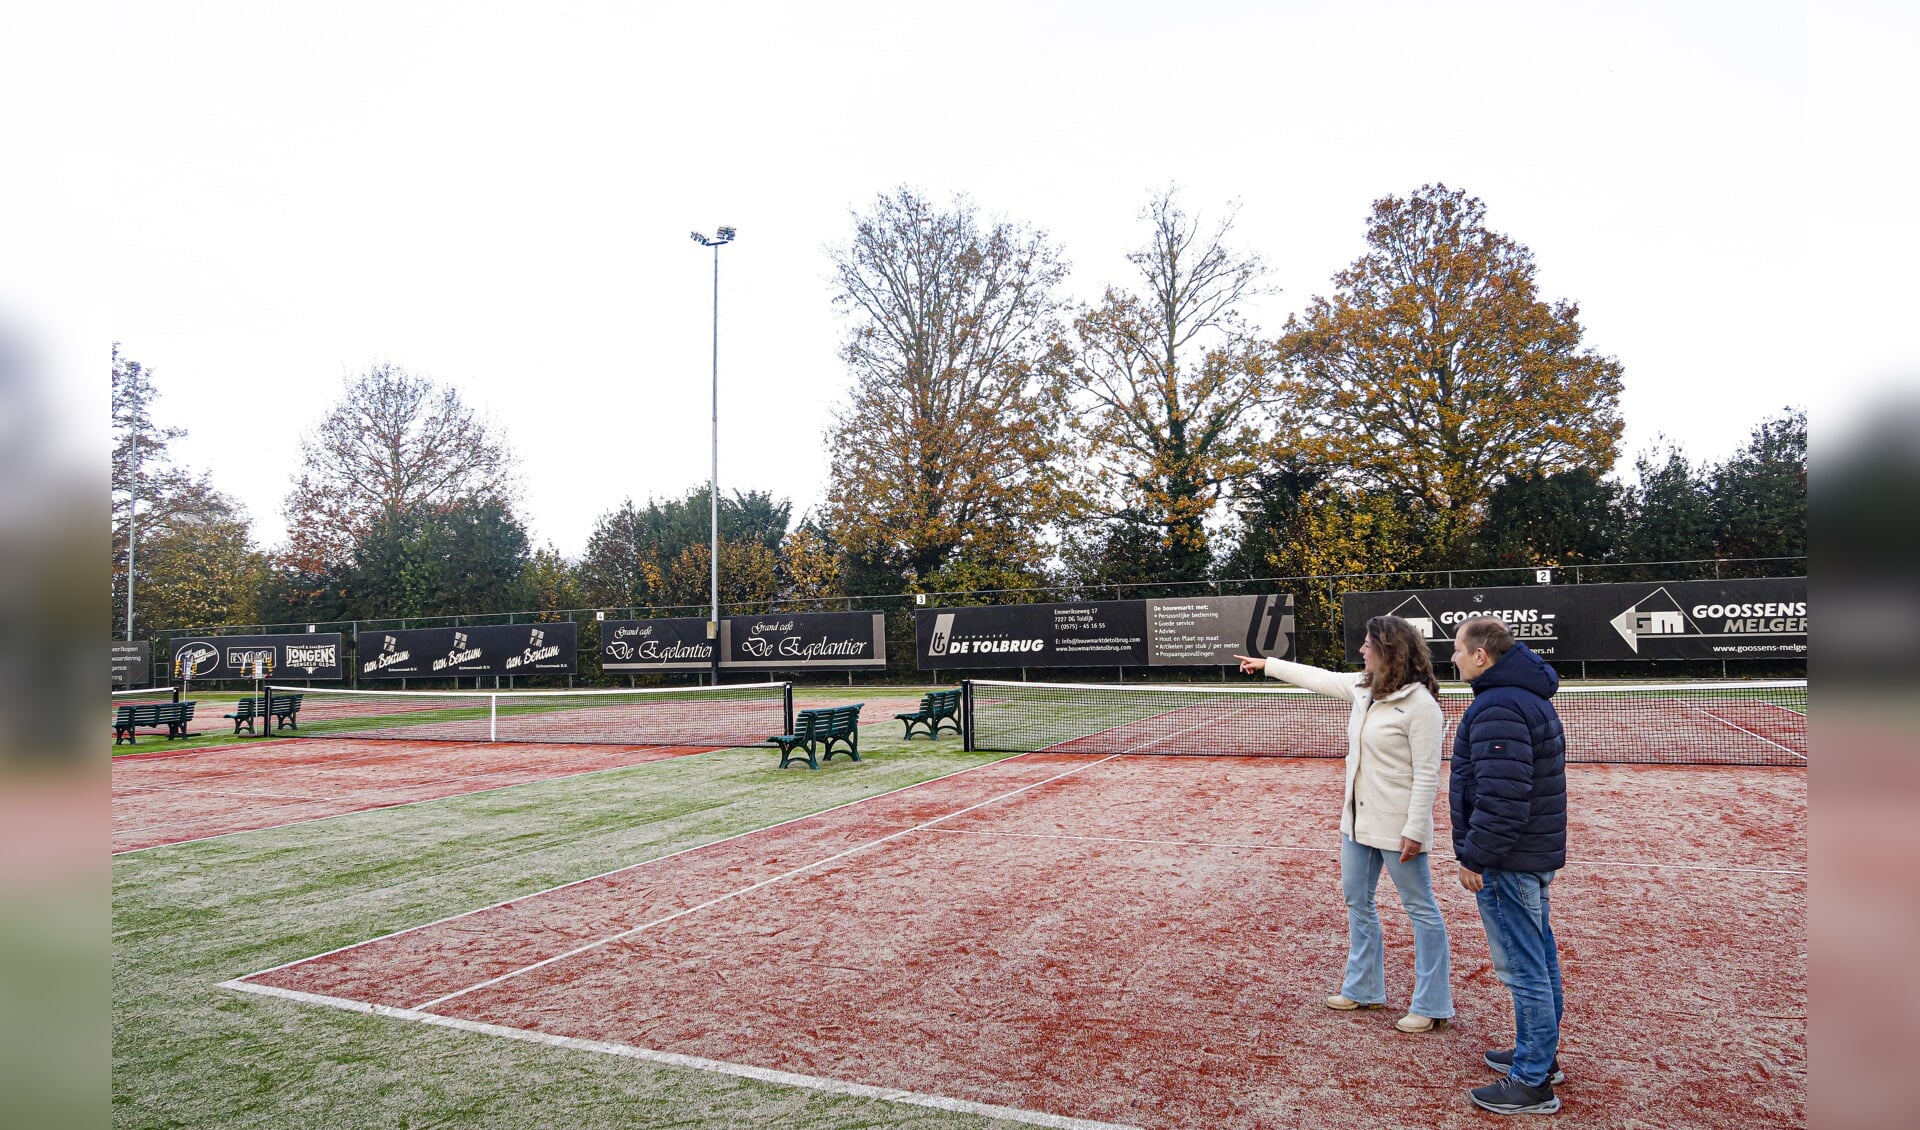 Bestuursleden Michelle Kluiwstra en Derk Jan Menkveld van de Hengelose tennisclub Het Elderink geven uitleg over de vernieuwingen op het tennispark. Foto: Luuk Stam